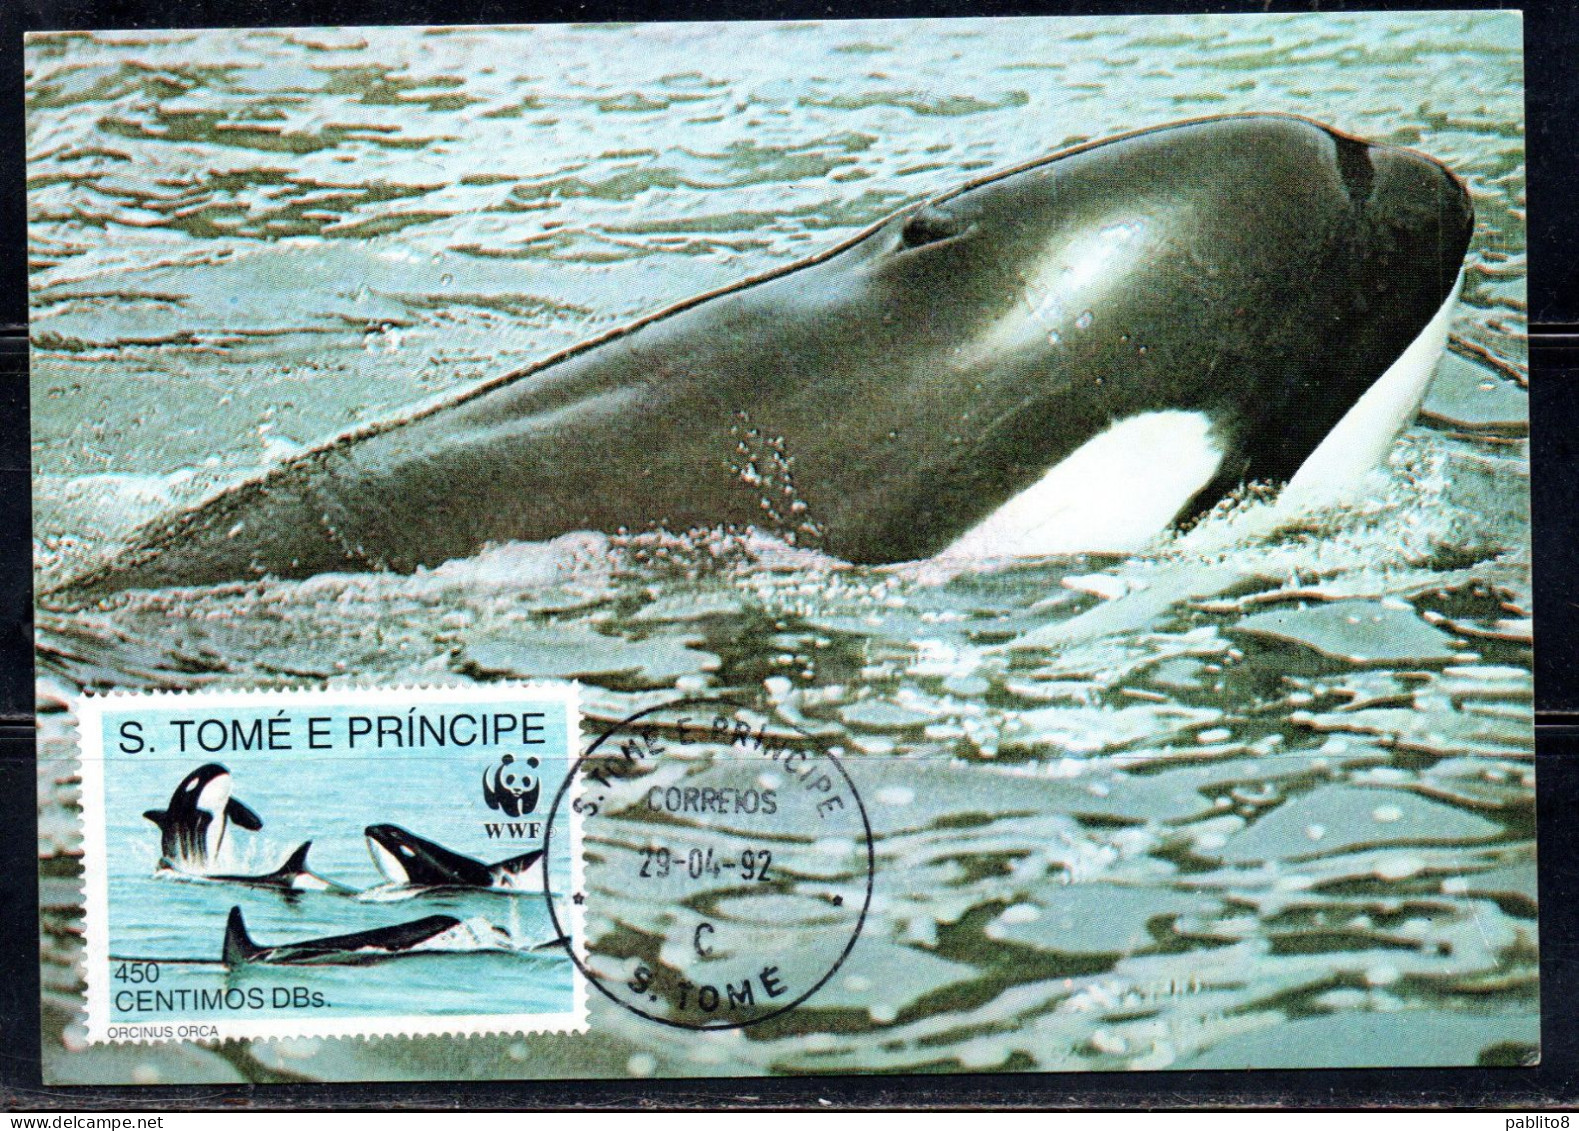 SAO S. SAN TOME' E PRINCIPE 1992 WWF MARINE LIFE FISHES ORCA 450c MAXI MAXIMUM CARD CARTE - São Tomé Und Príncipe